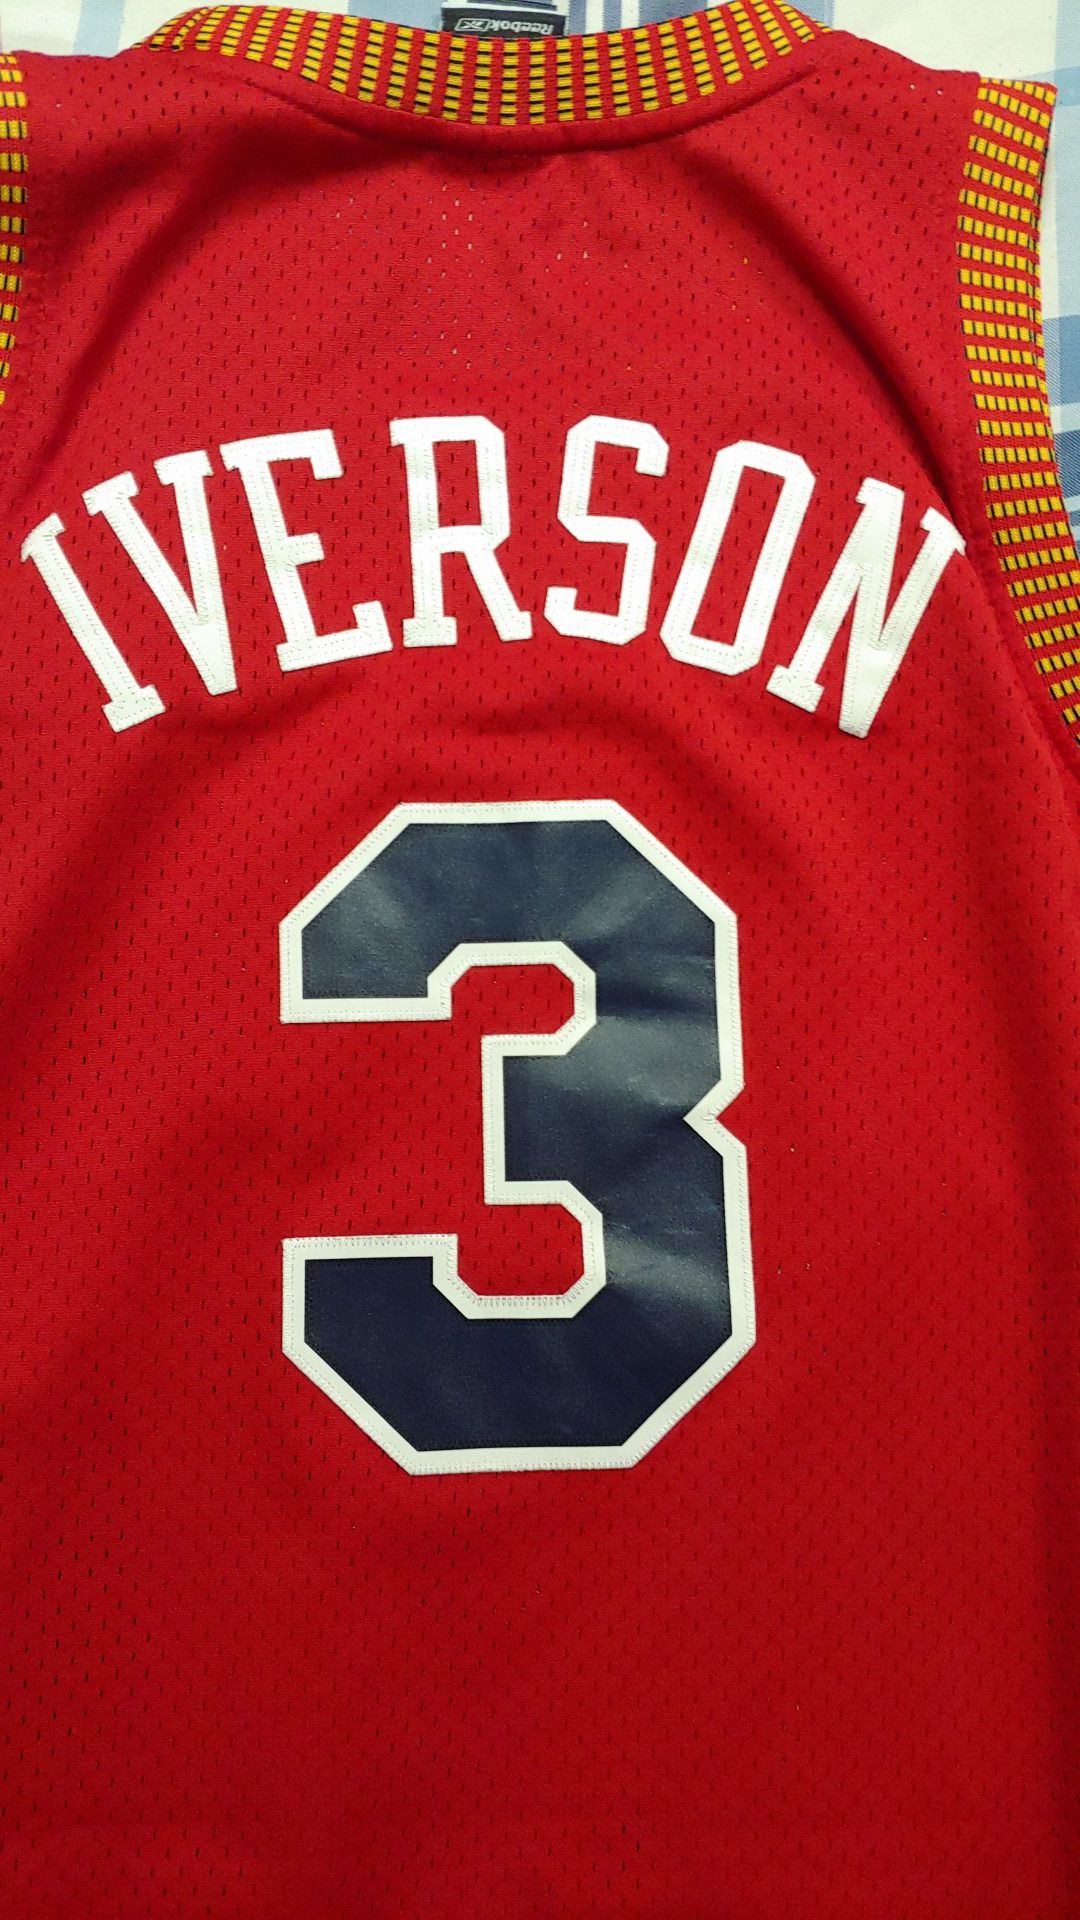 men Allen Iverson Nats Jersey, Stitched #3 Allen Iverson Syracuse